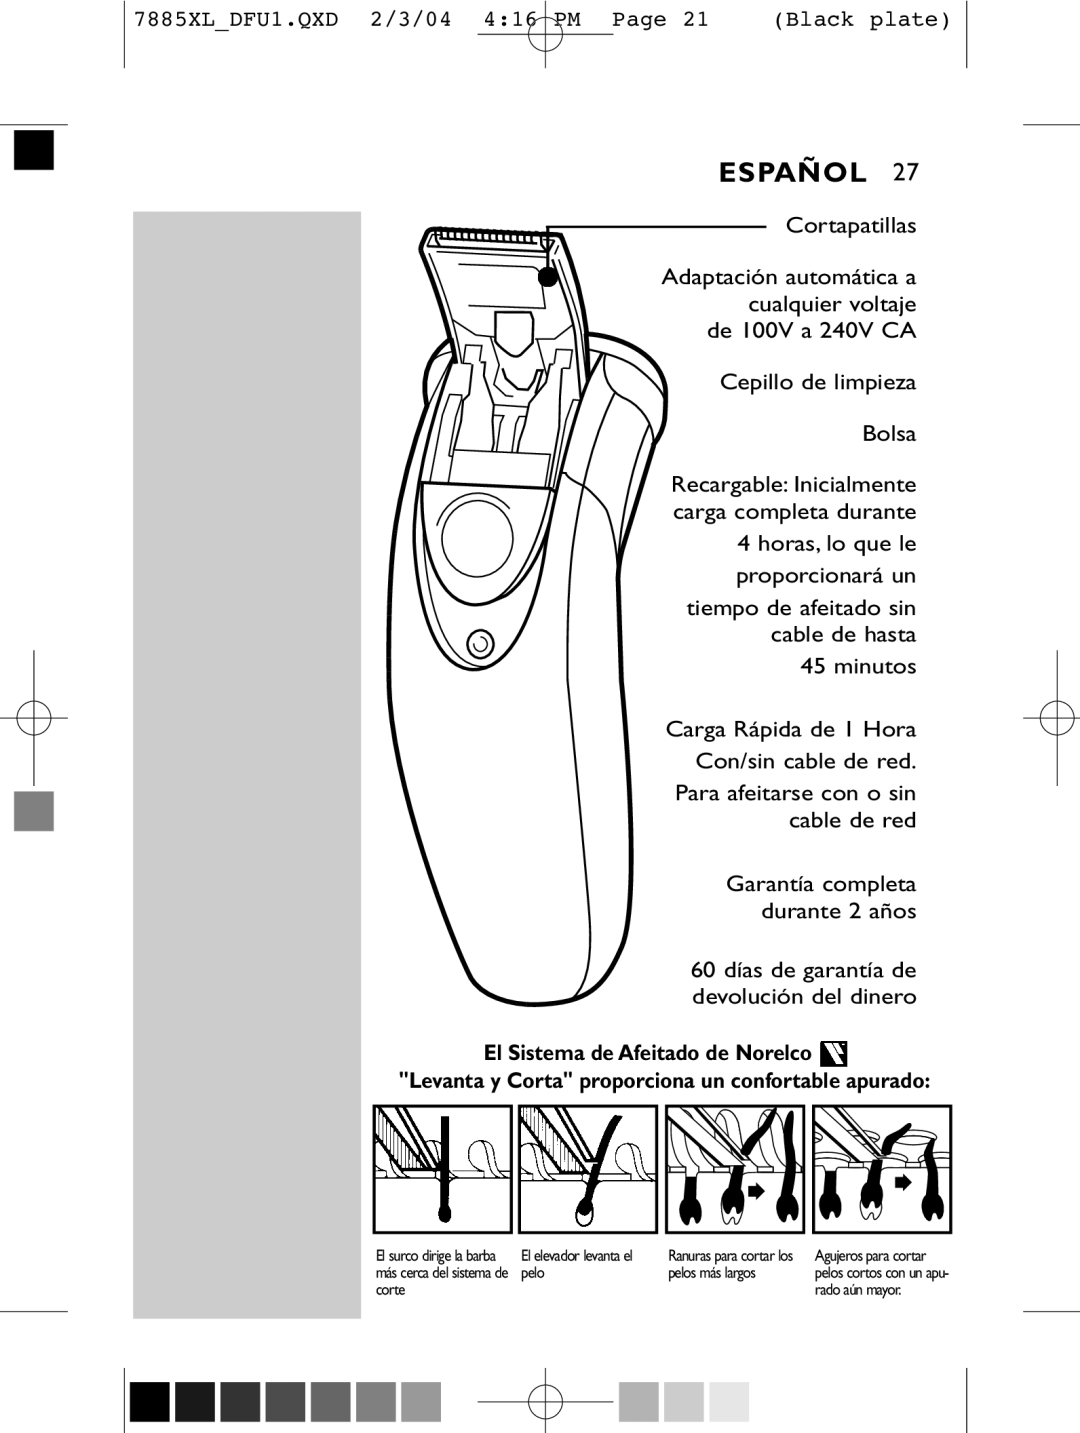 Philips 7885XL, 6887XL manual Español, El Sistema de Afeitado de Norelco, Levanta y Corta proporciona un confortable apurado 